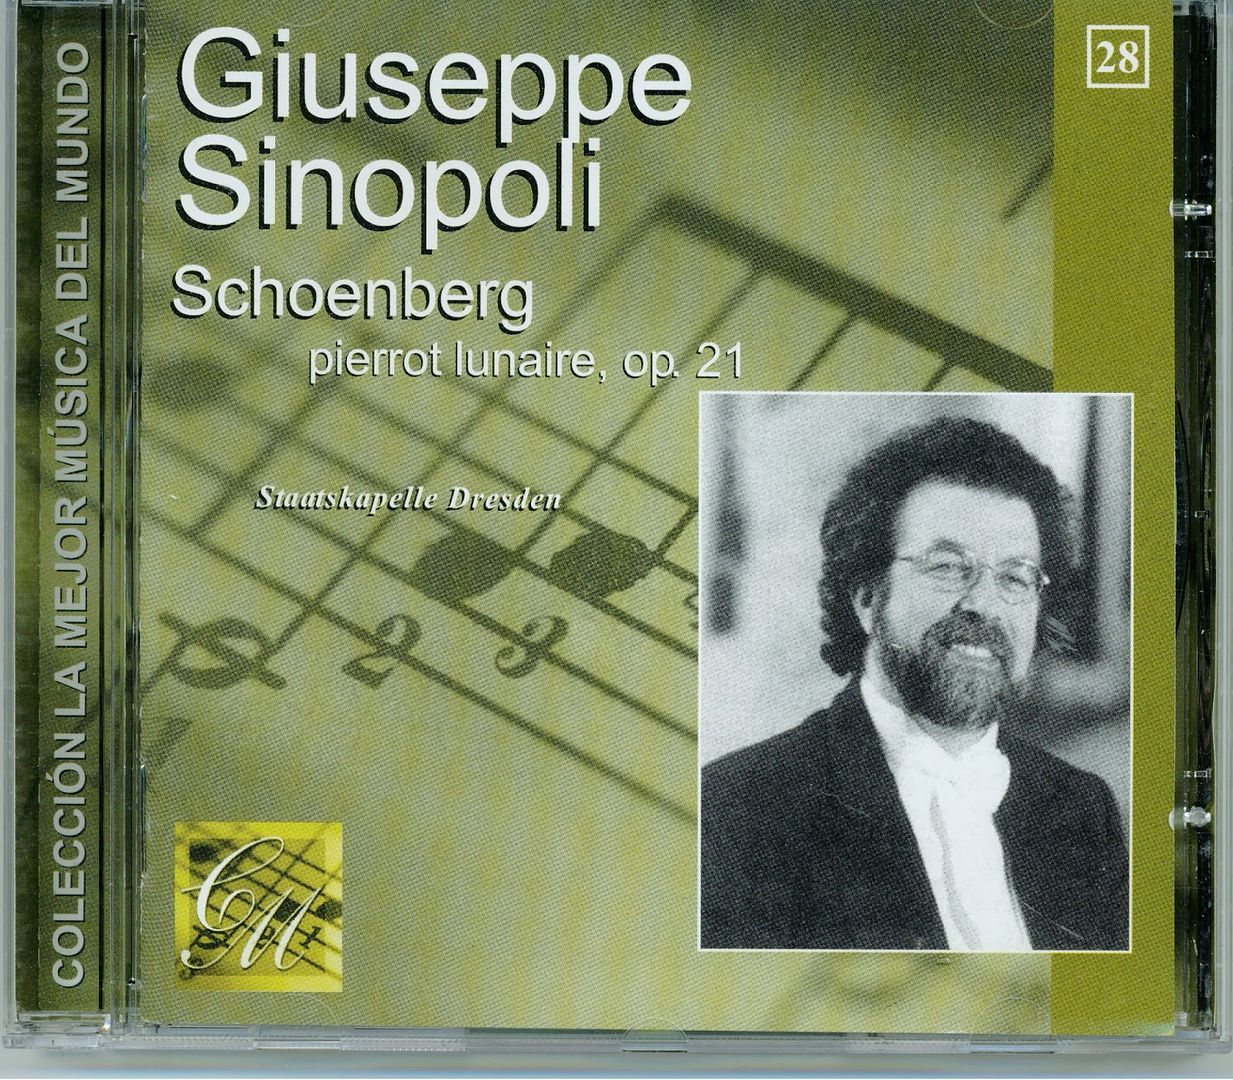 1 1028 - Giuseppe Sinopoli - La mejor musica del mundo